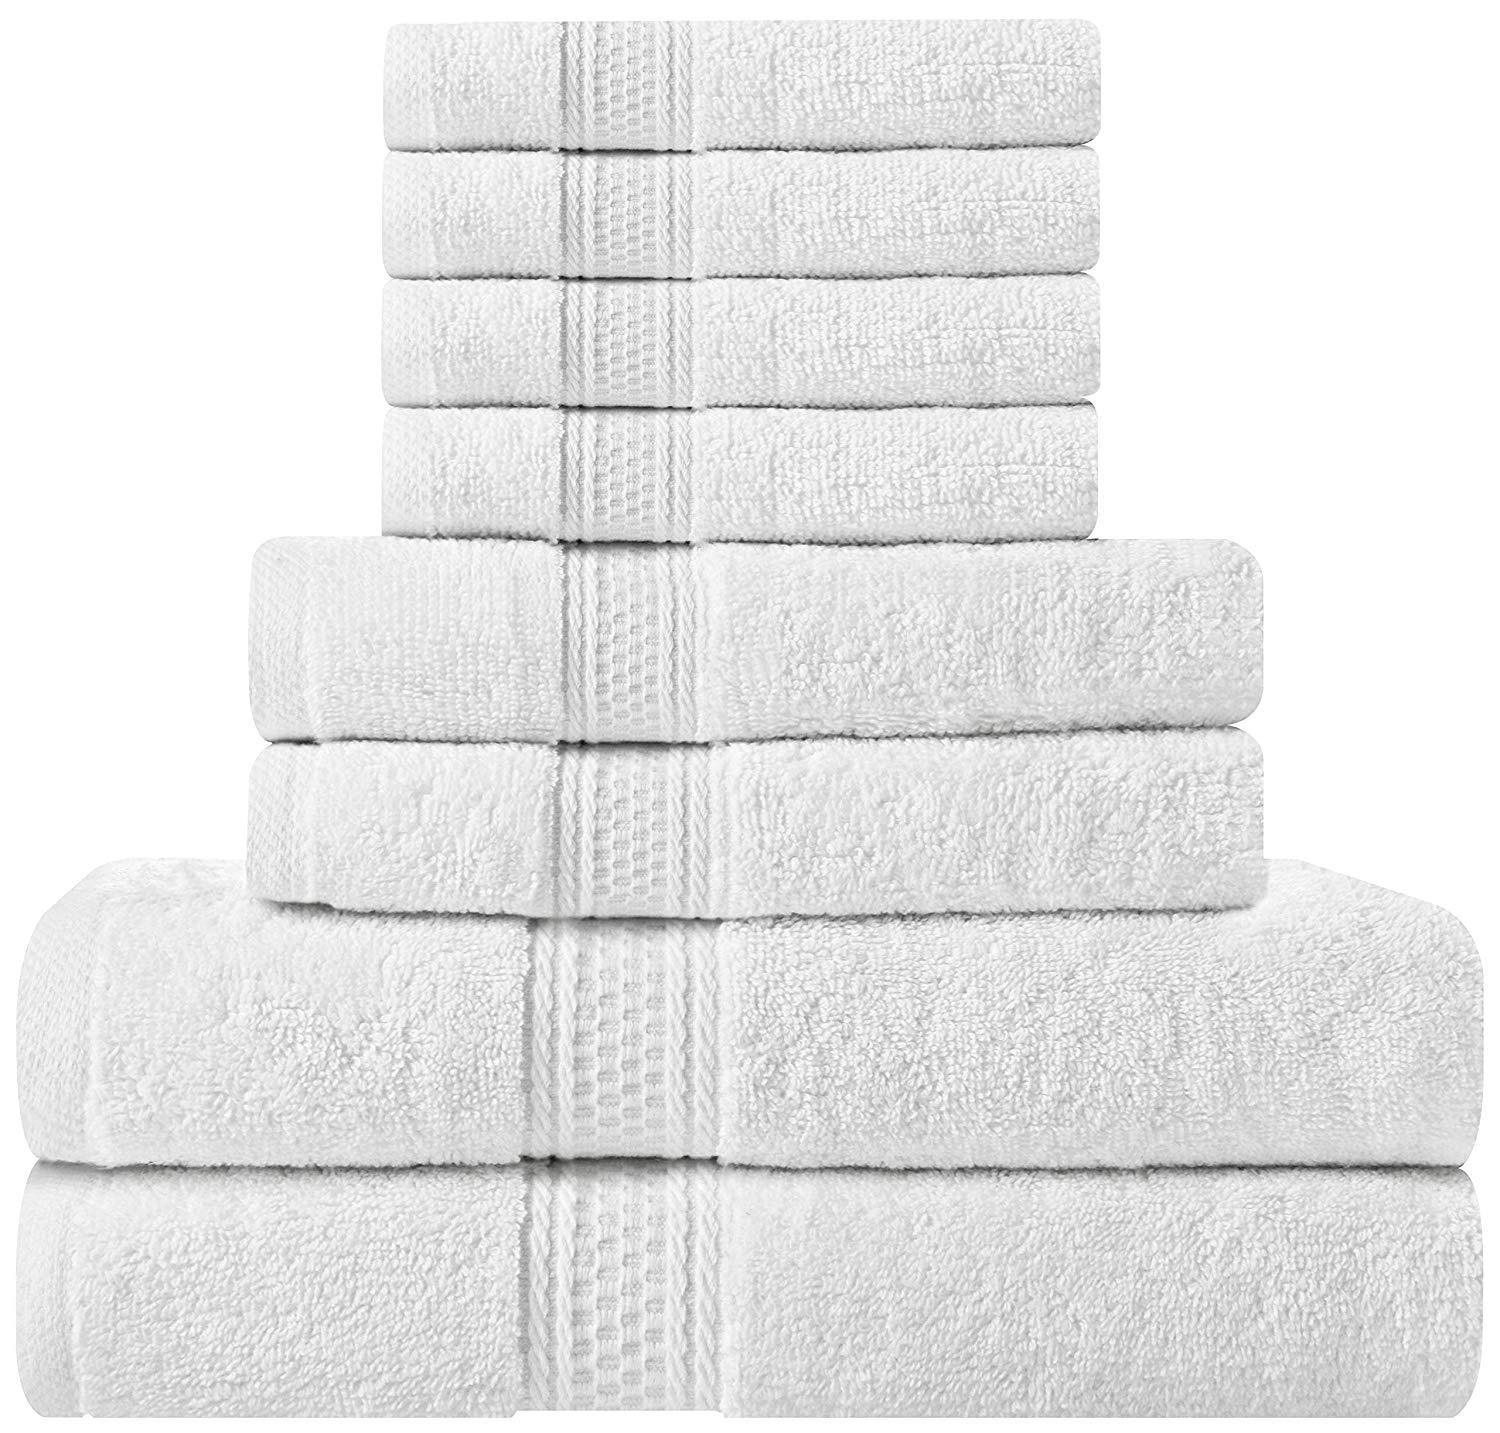 https://downcotton.com/cdn/shop/products/100-ring-spun-cotton-premium-8-piece-towel-sets-towel-sets-down-cotton-white-458841_1800x1800.jpg?v=1601581475